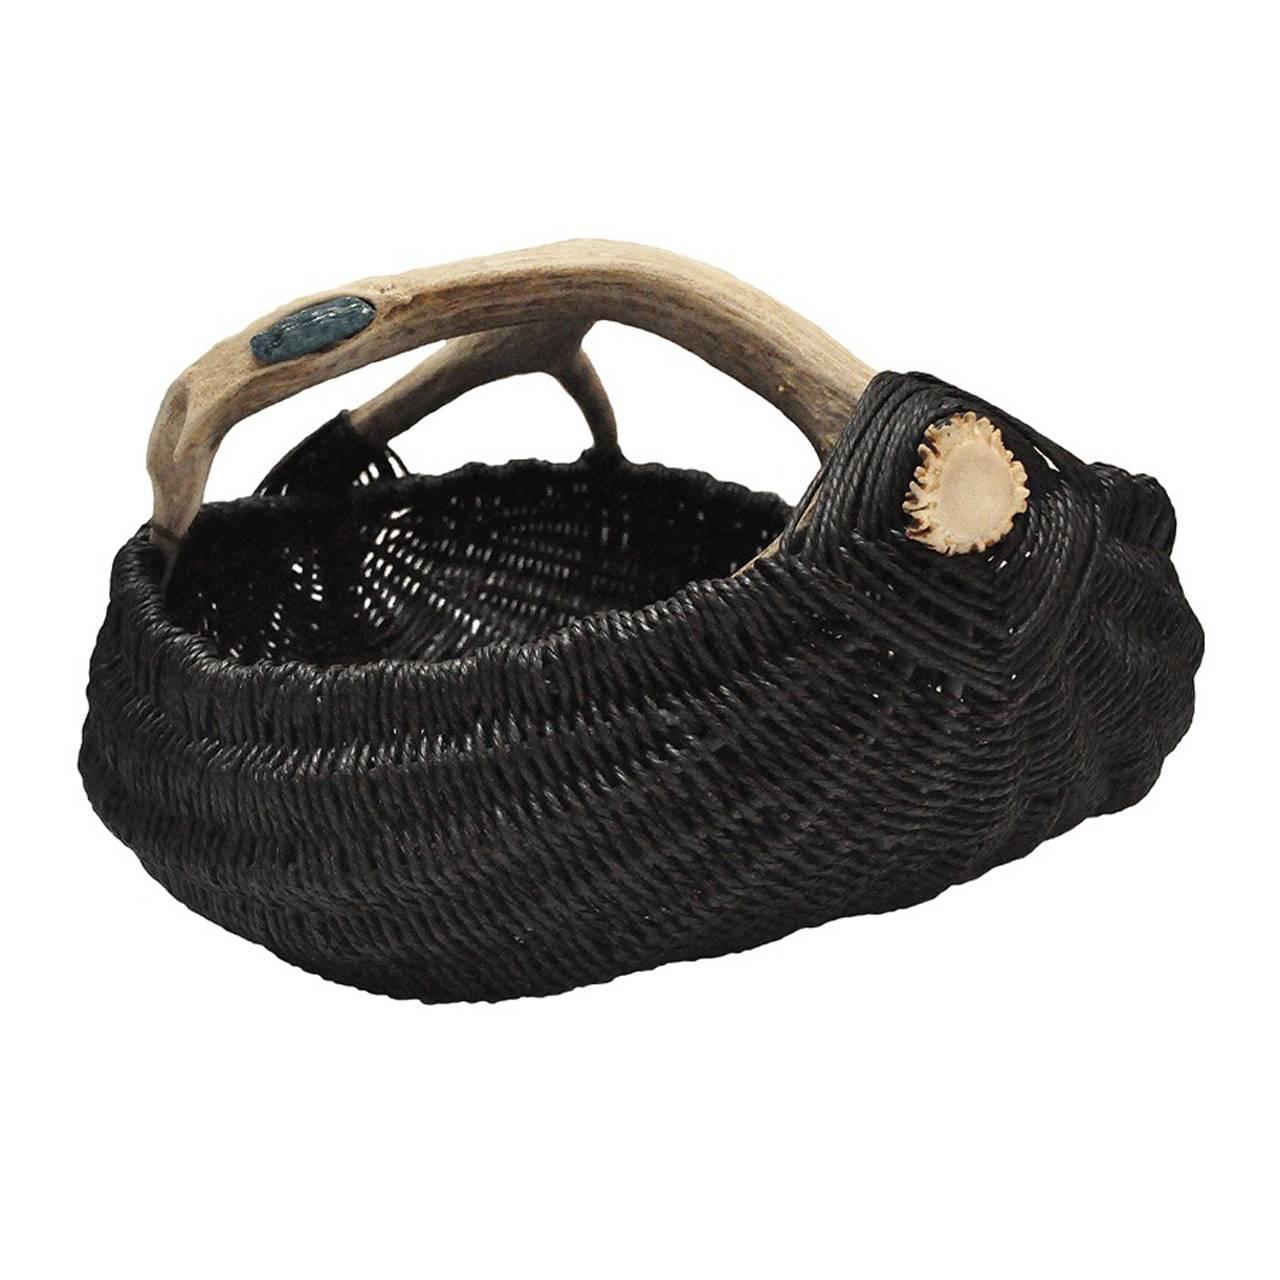 Custom Antler Basket with Blue Kyanite